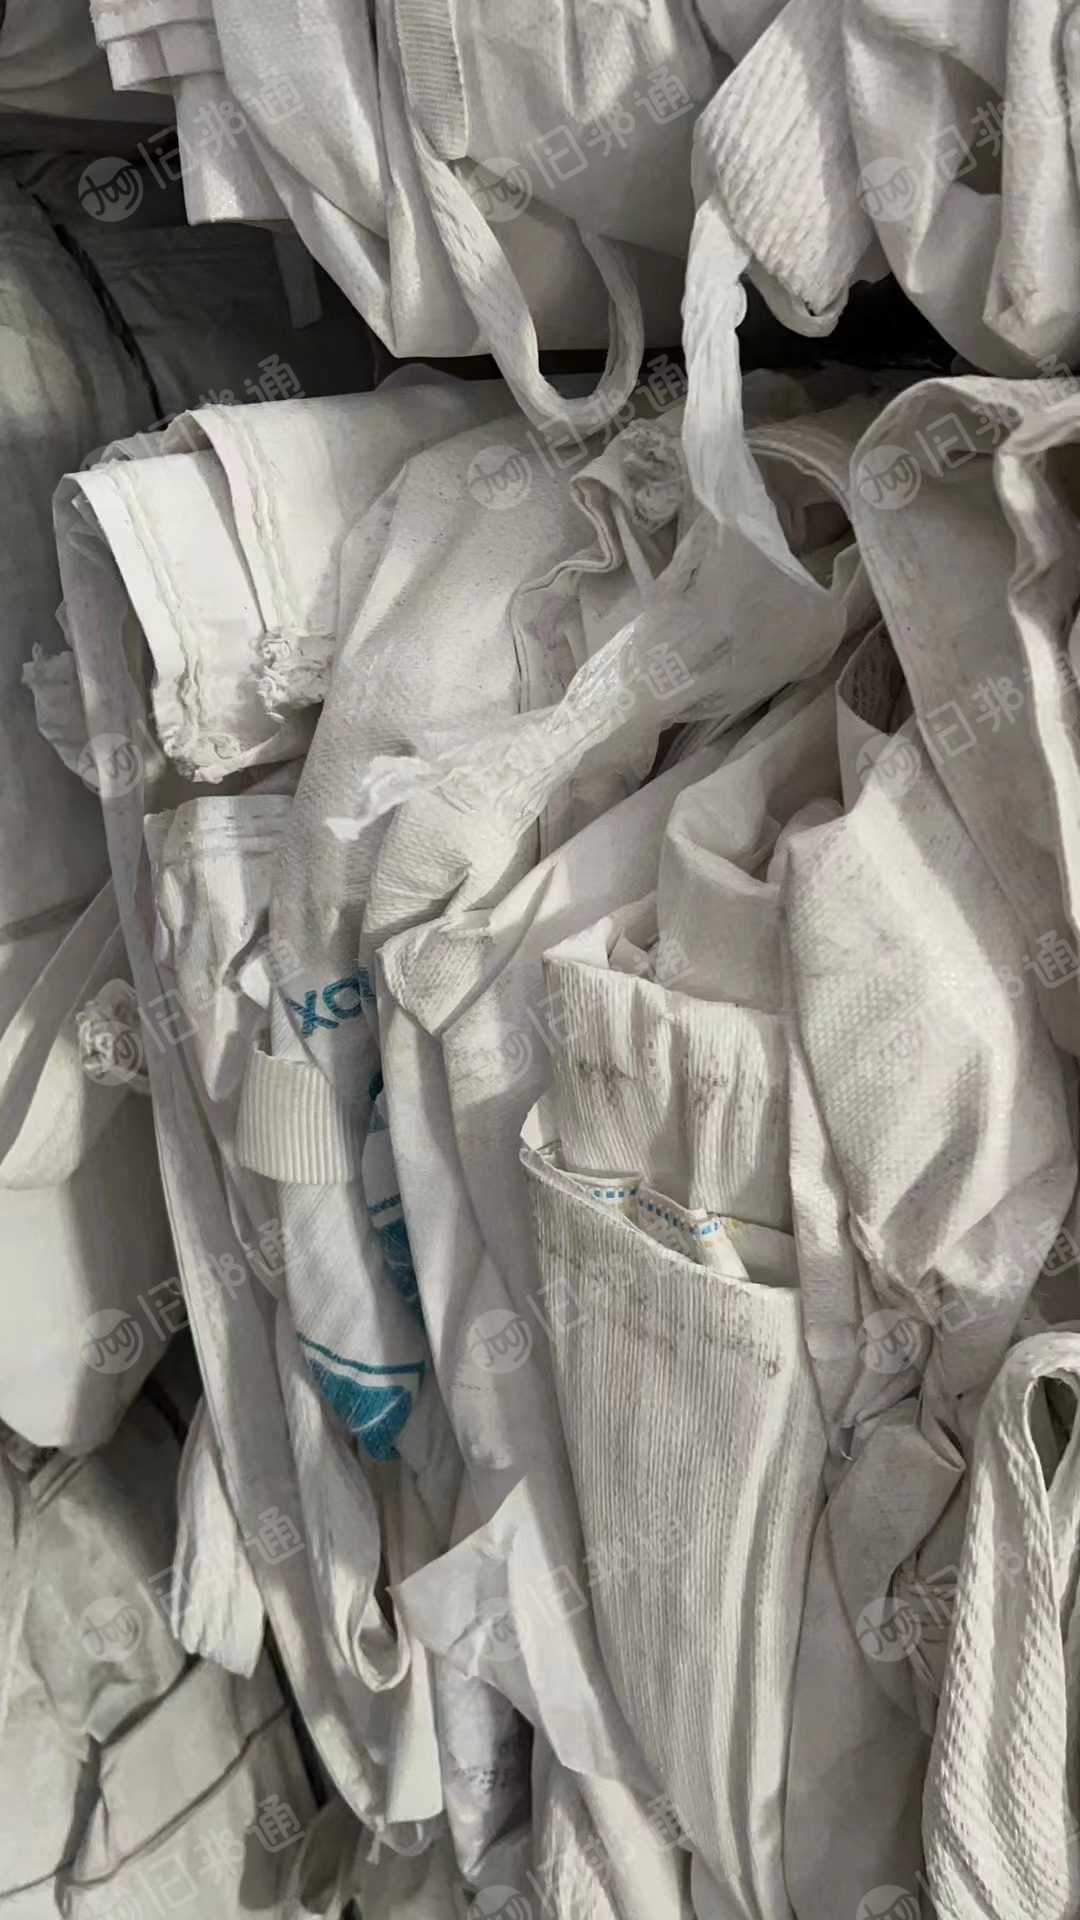 出售装钛白粉的原料袋，袋上有浮粉，口袋完好，可利用，1米X1米，高度1.5米